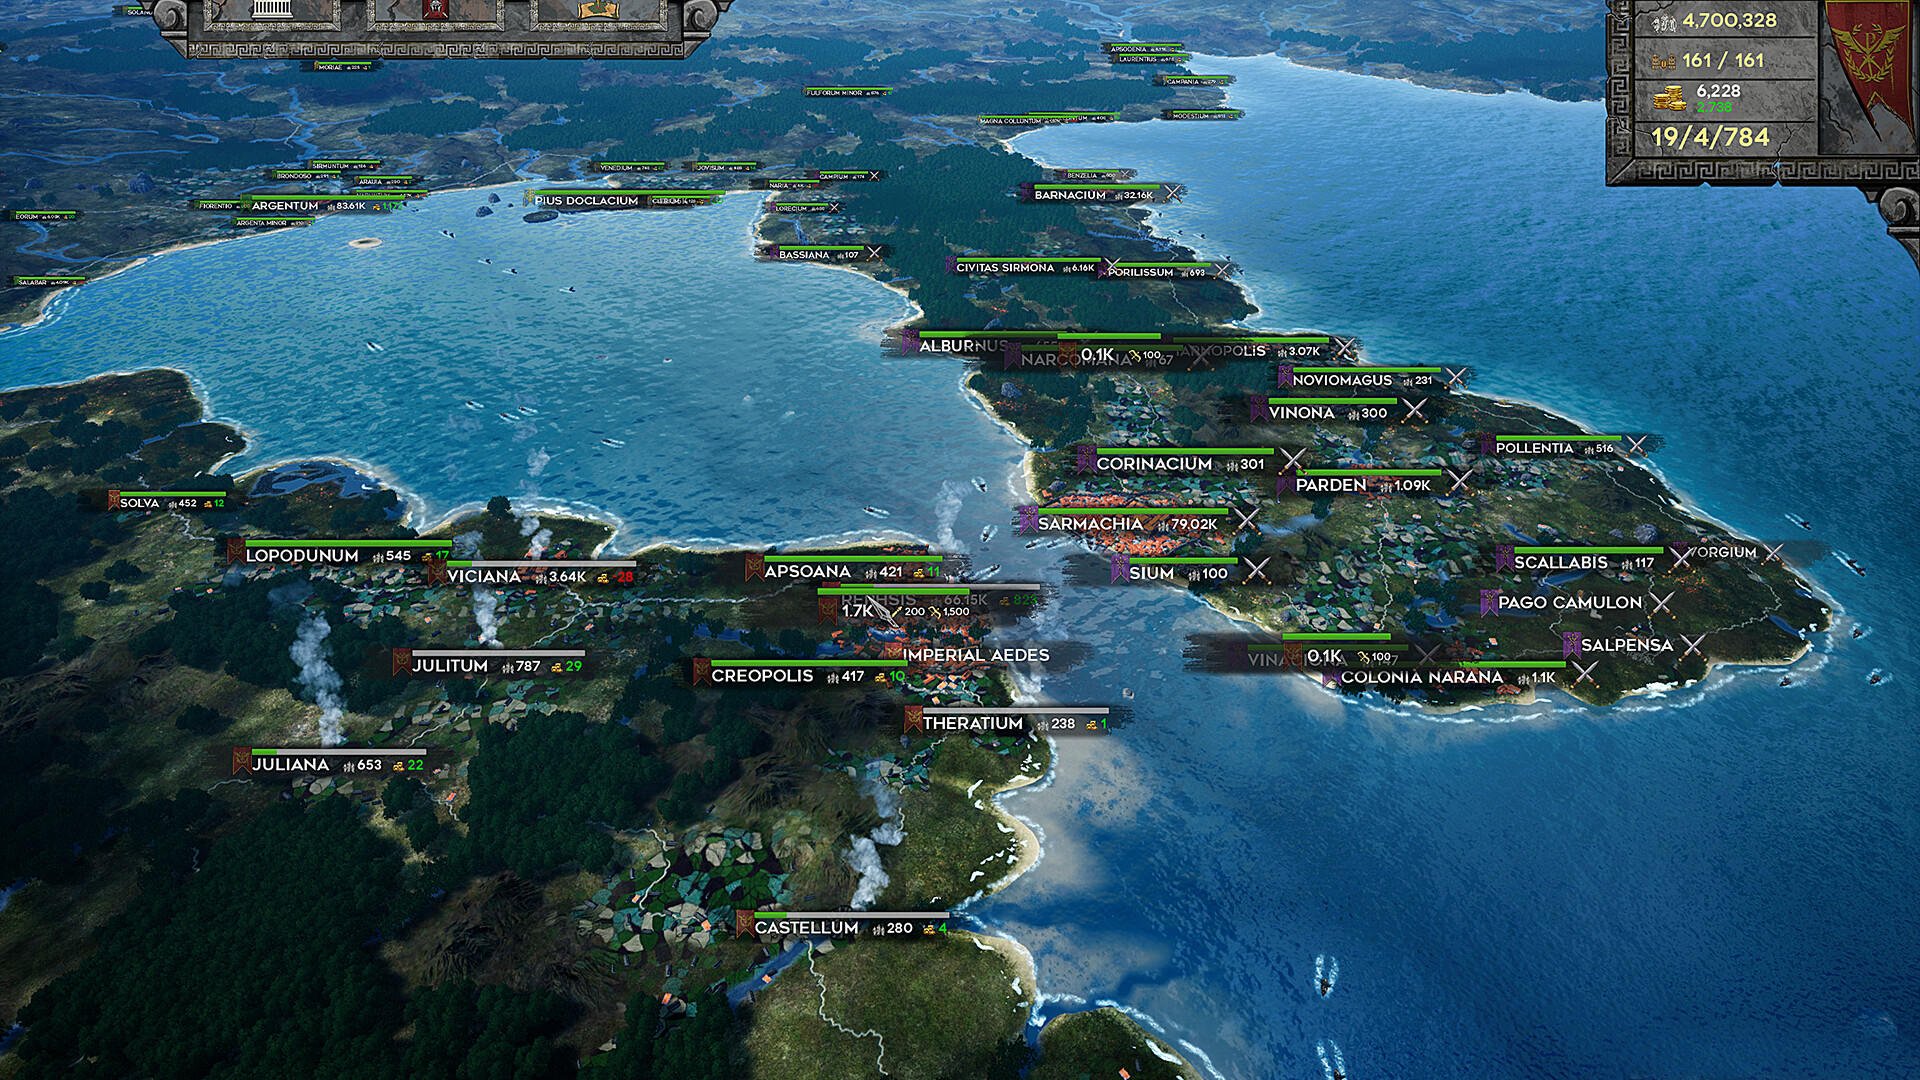 Screenshot 1 of Queda de um Império 